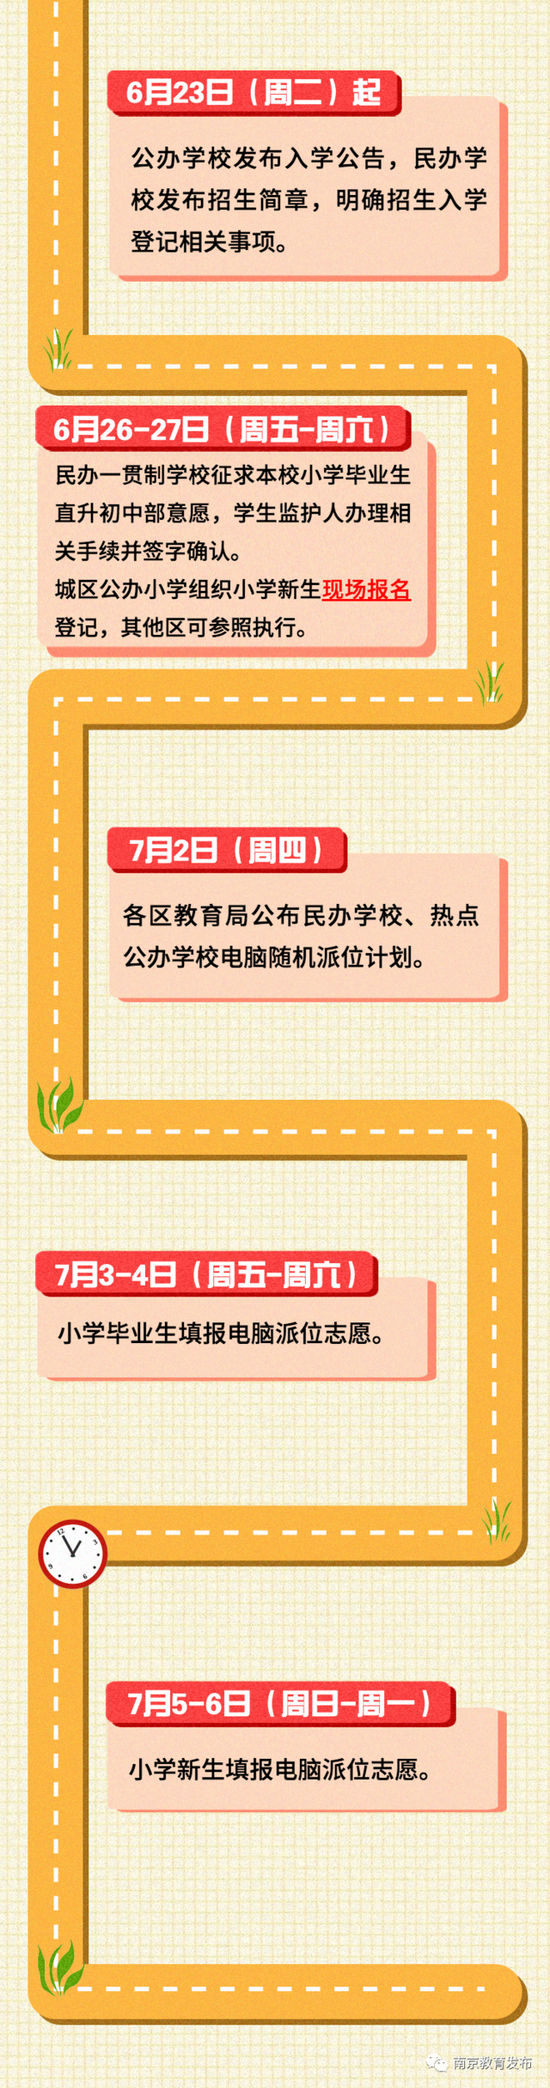 南京2020初中学校排名_2020中国大学星级排名:234所高校4星级以上,你的学校